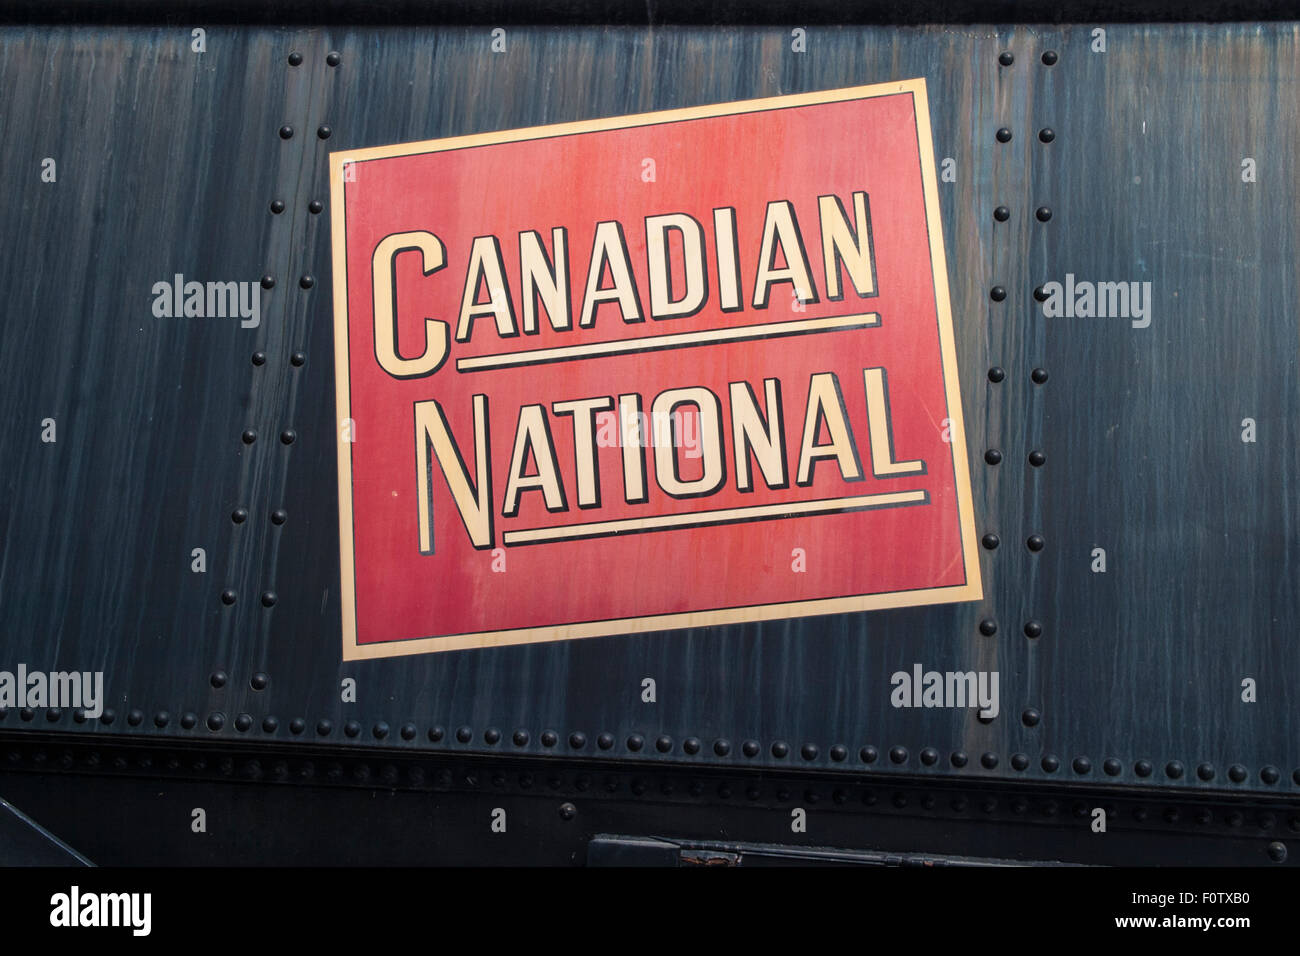 Exposition Les trains du CN, à TORONTO, ONTARIO, CANADA - circa 2008. Un musée en plein air pour l'affichage de plusieurs locomotives du Canadien National Banque D'Images